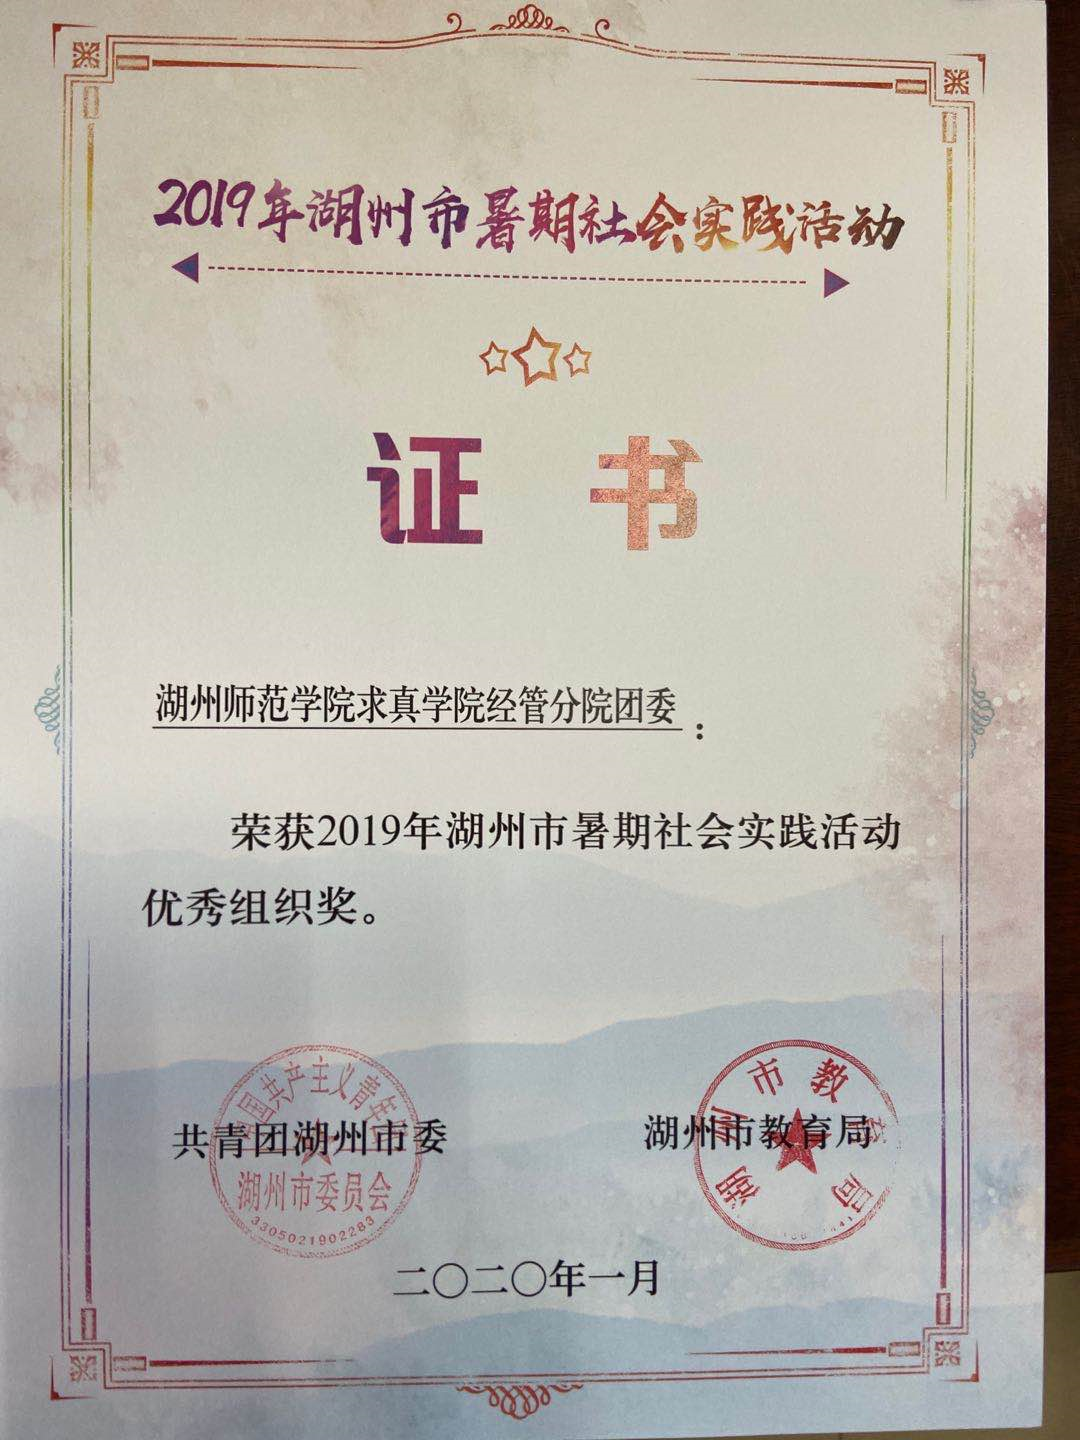 2019年湖州市暑期社会实践活动优秀组织奖.png